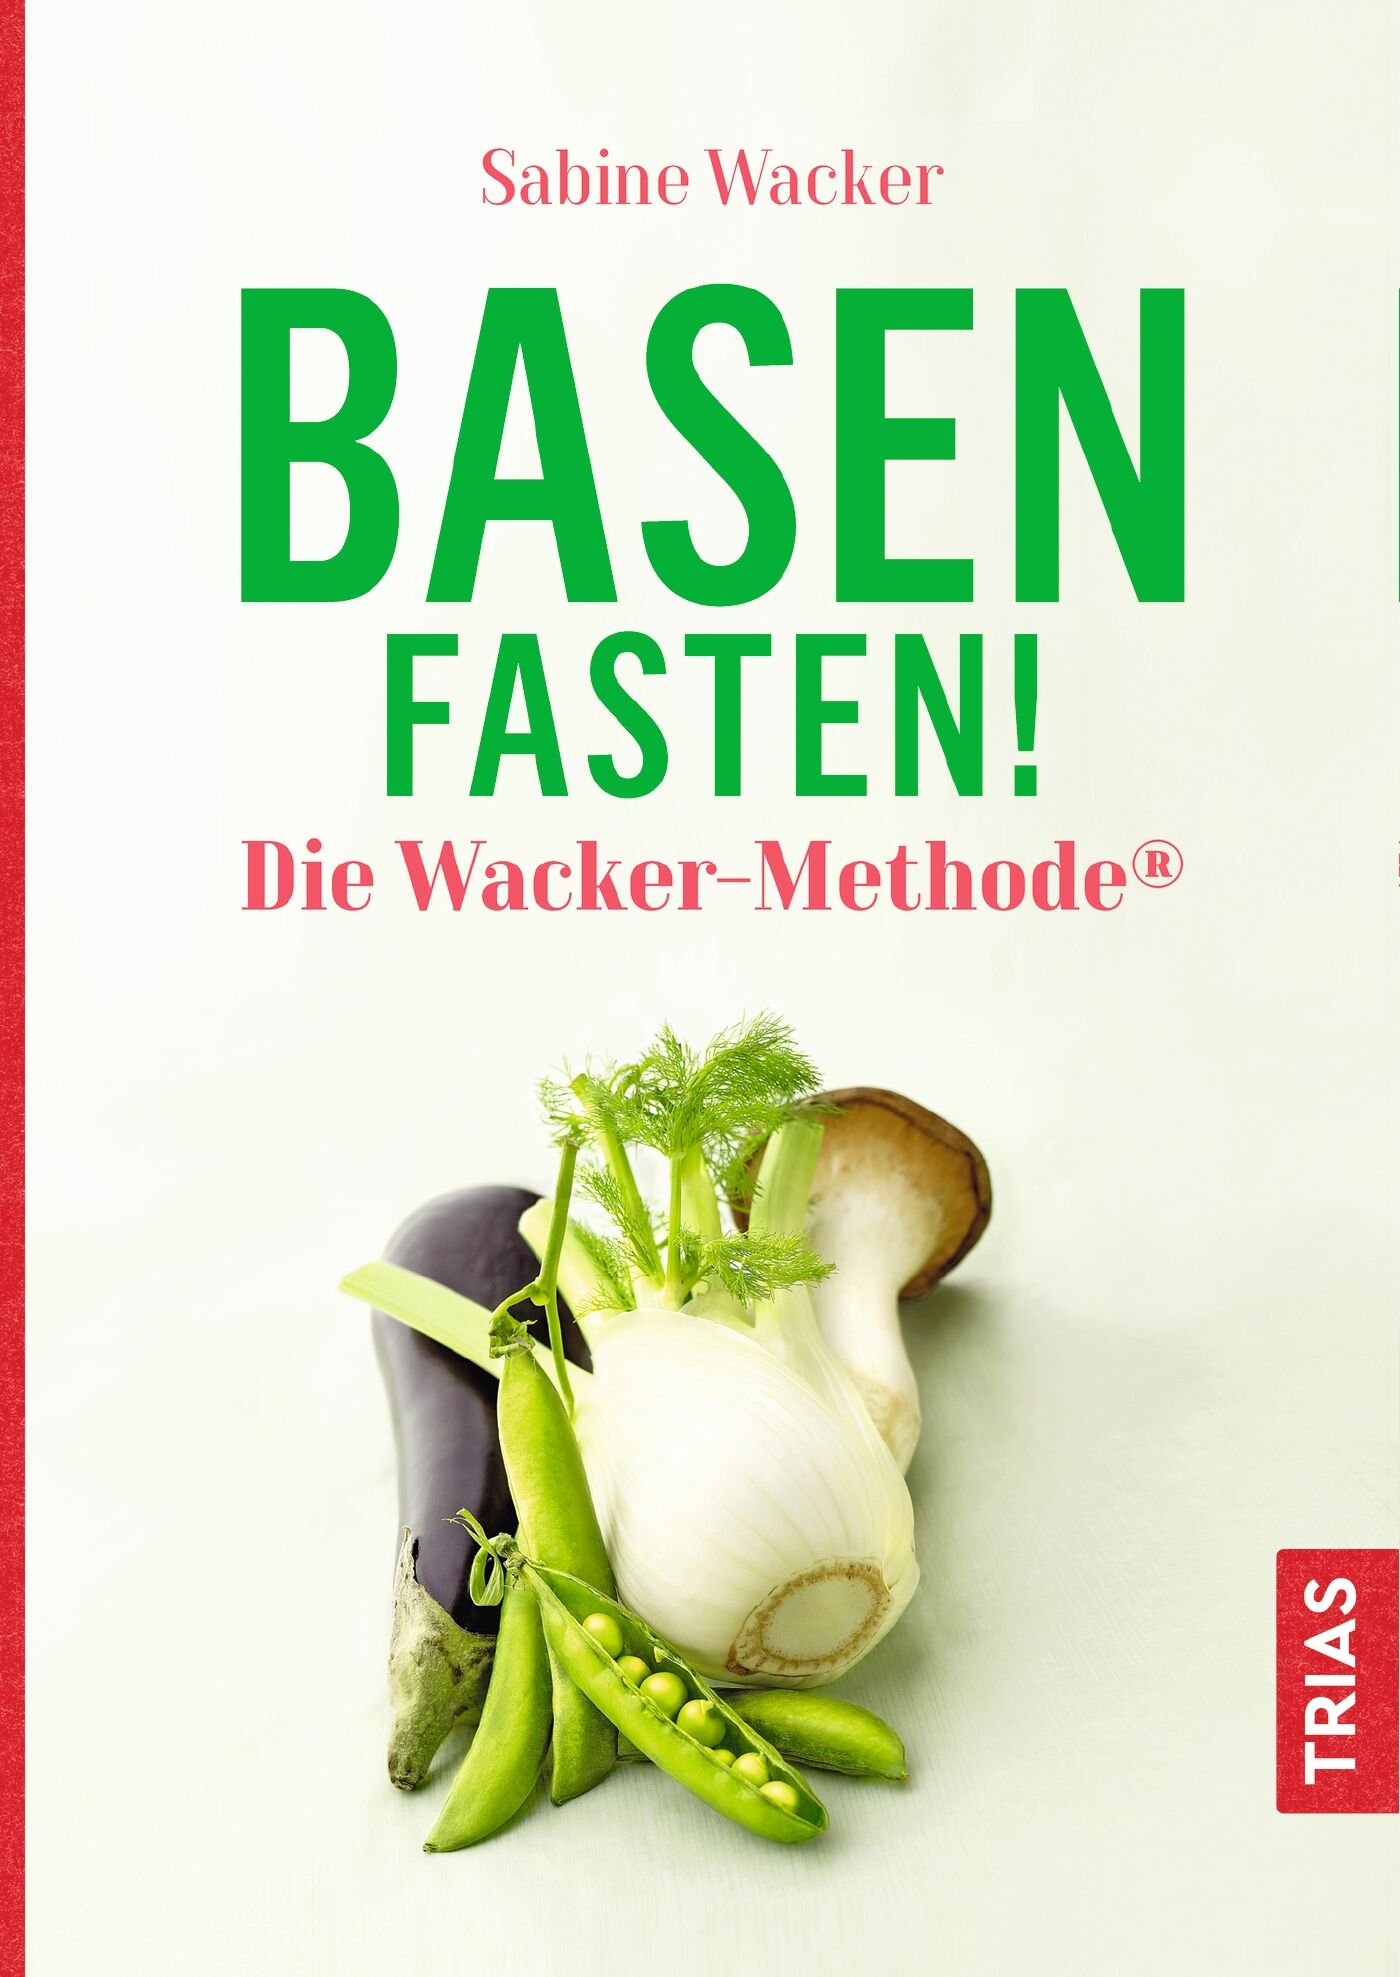 Basenfasten! Die Wacker-Methode®, 9783432112220